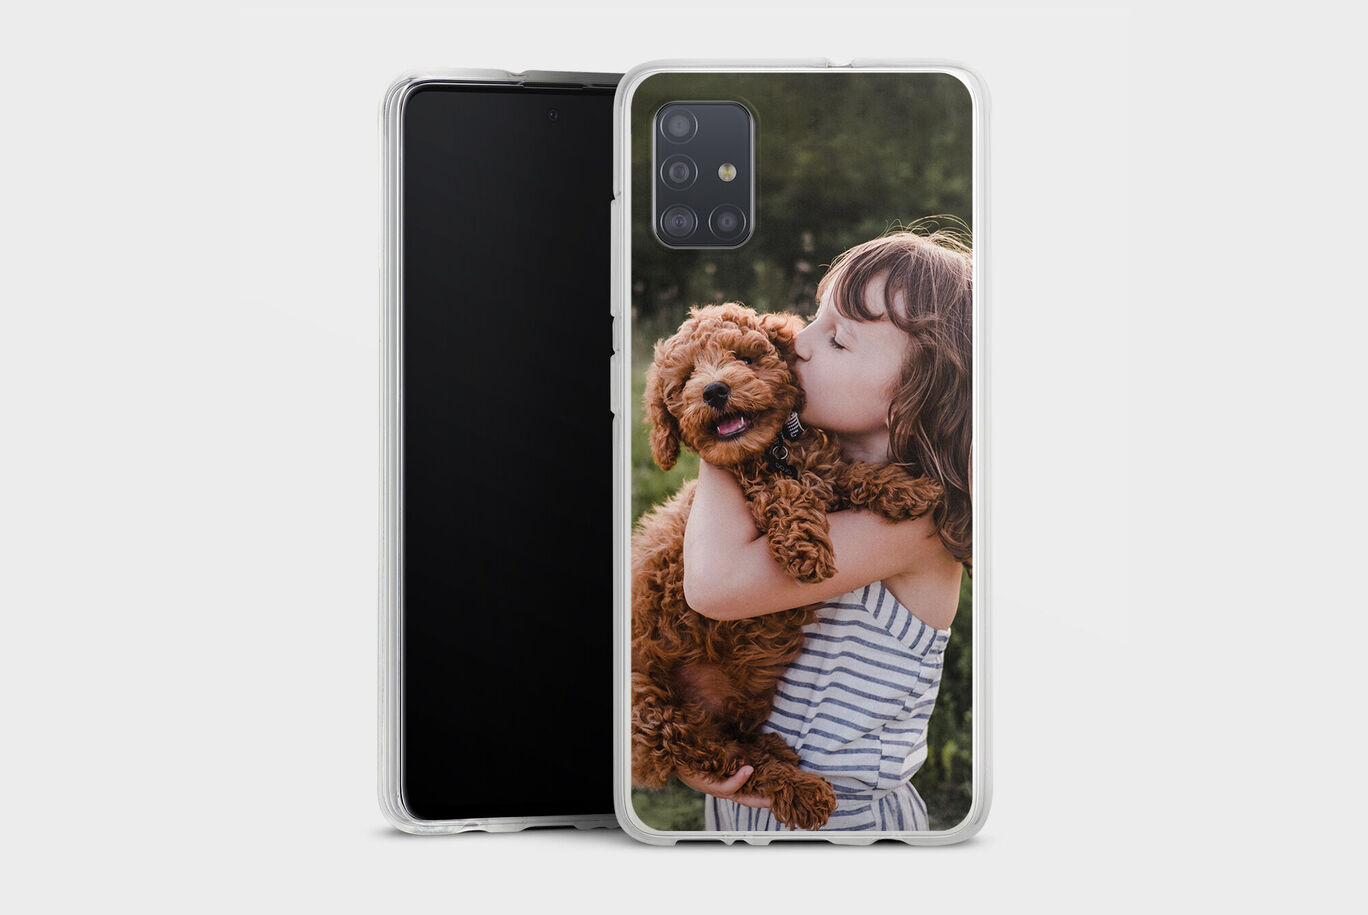 Cover smartphone personalizzata per modelli Samsung con la foto di una bambina e il suo cane